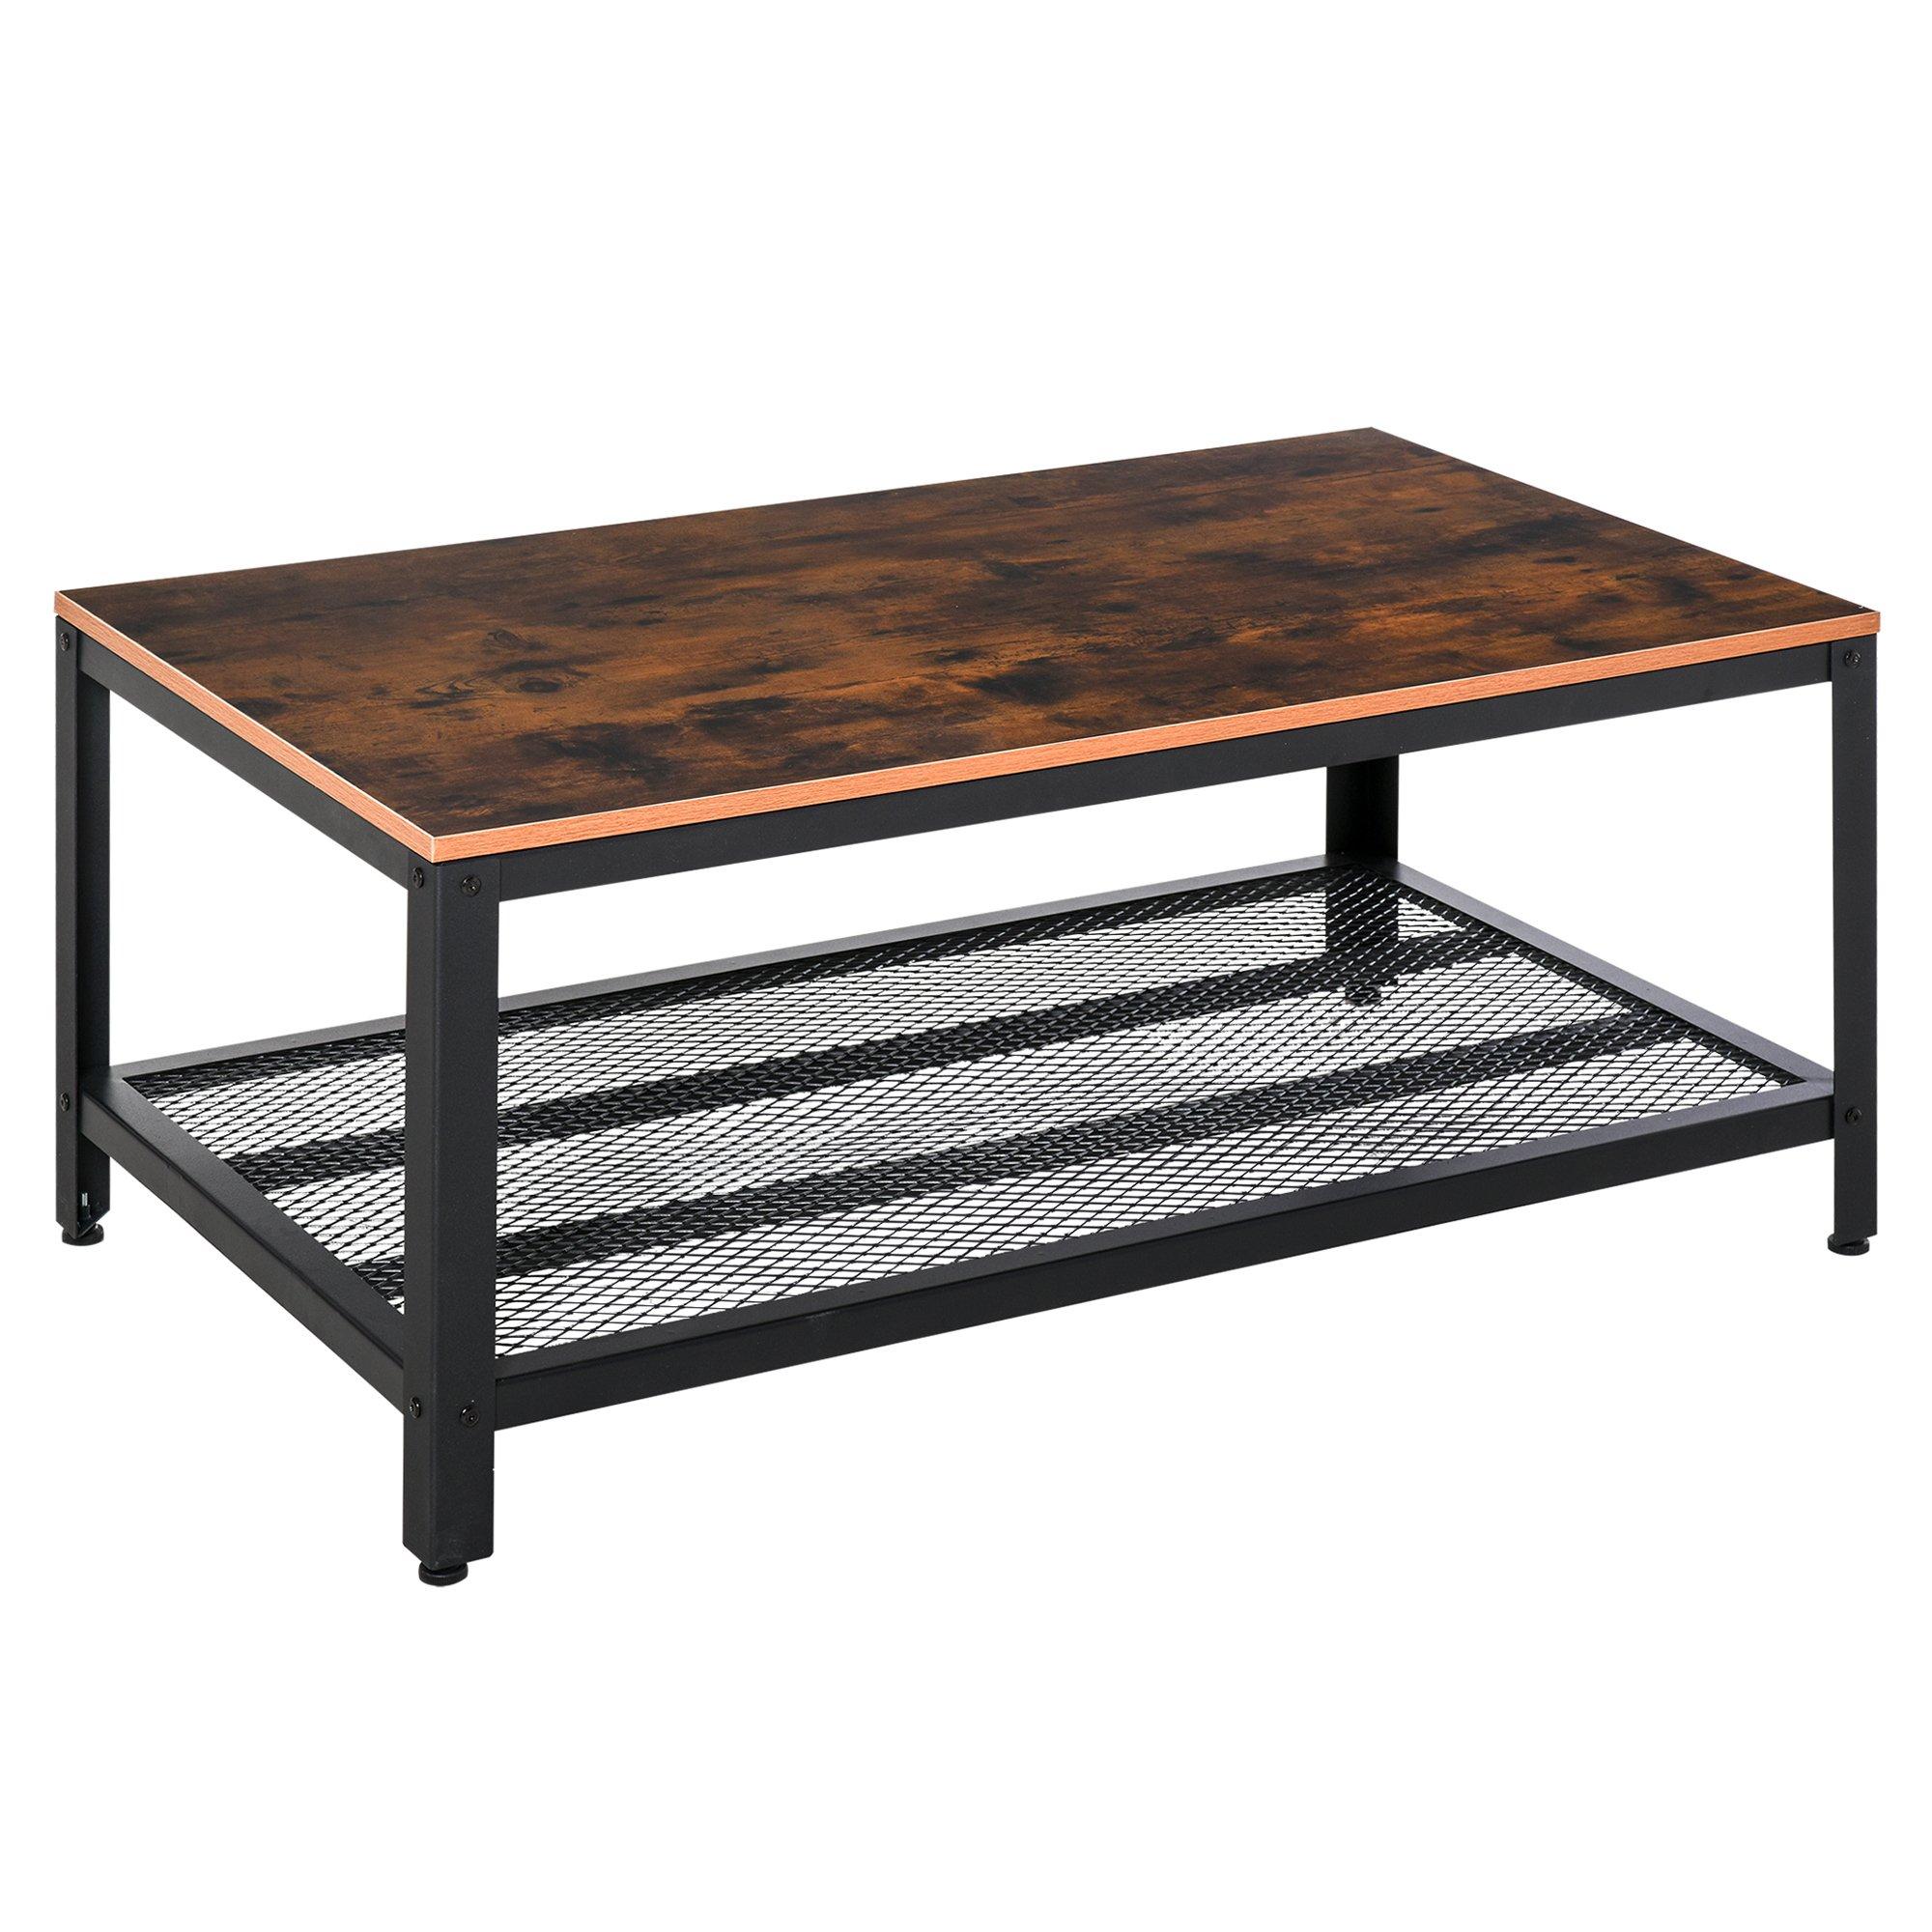 2 Tier Wooden Coffee Table Retro Industrial Style Side Desk Shelf